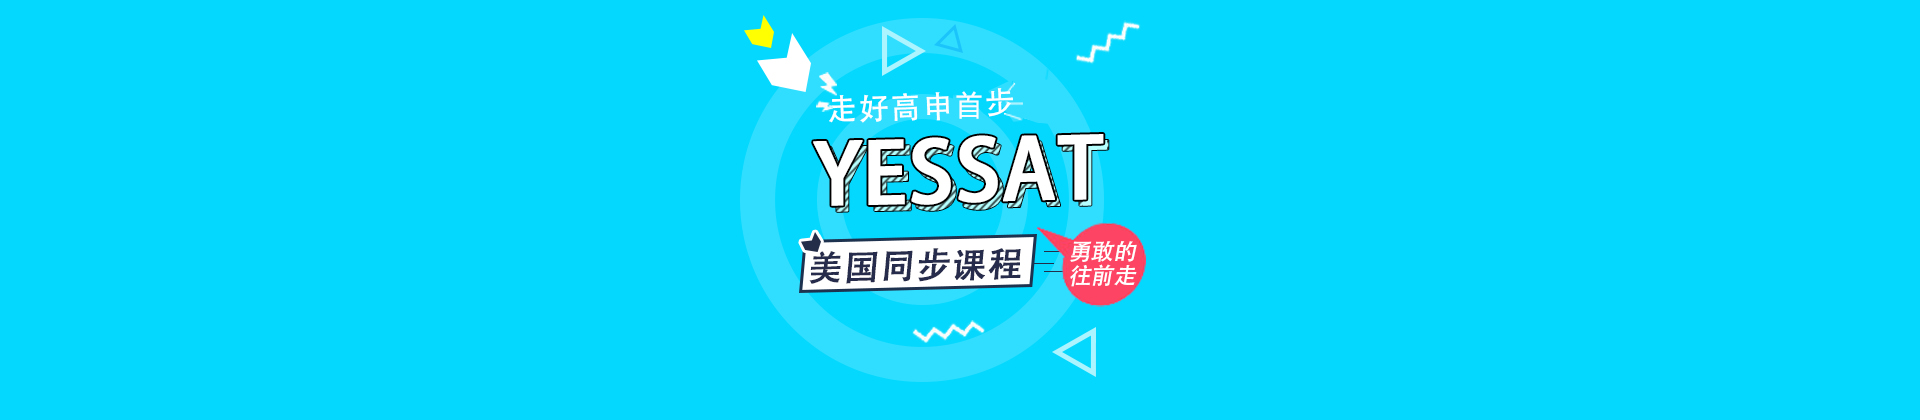 上海yessat北美考试中心